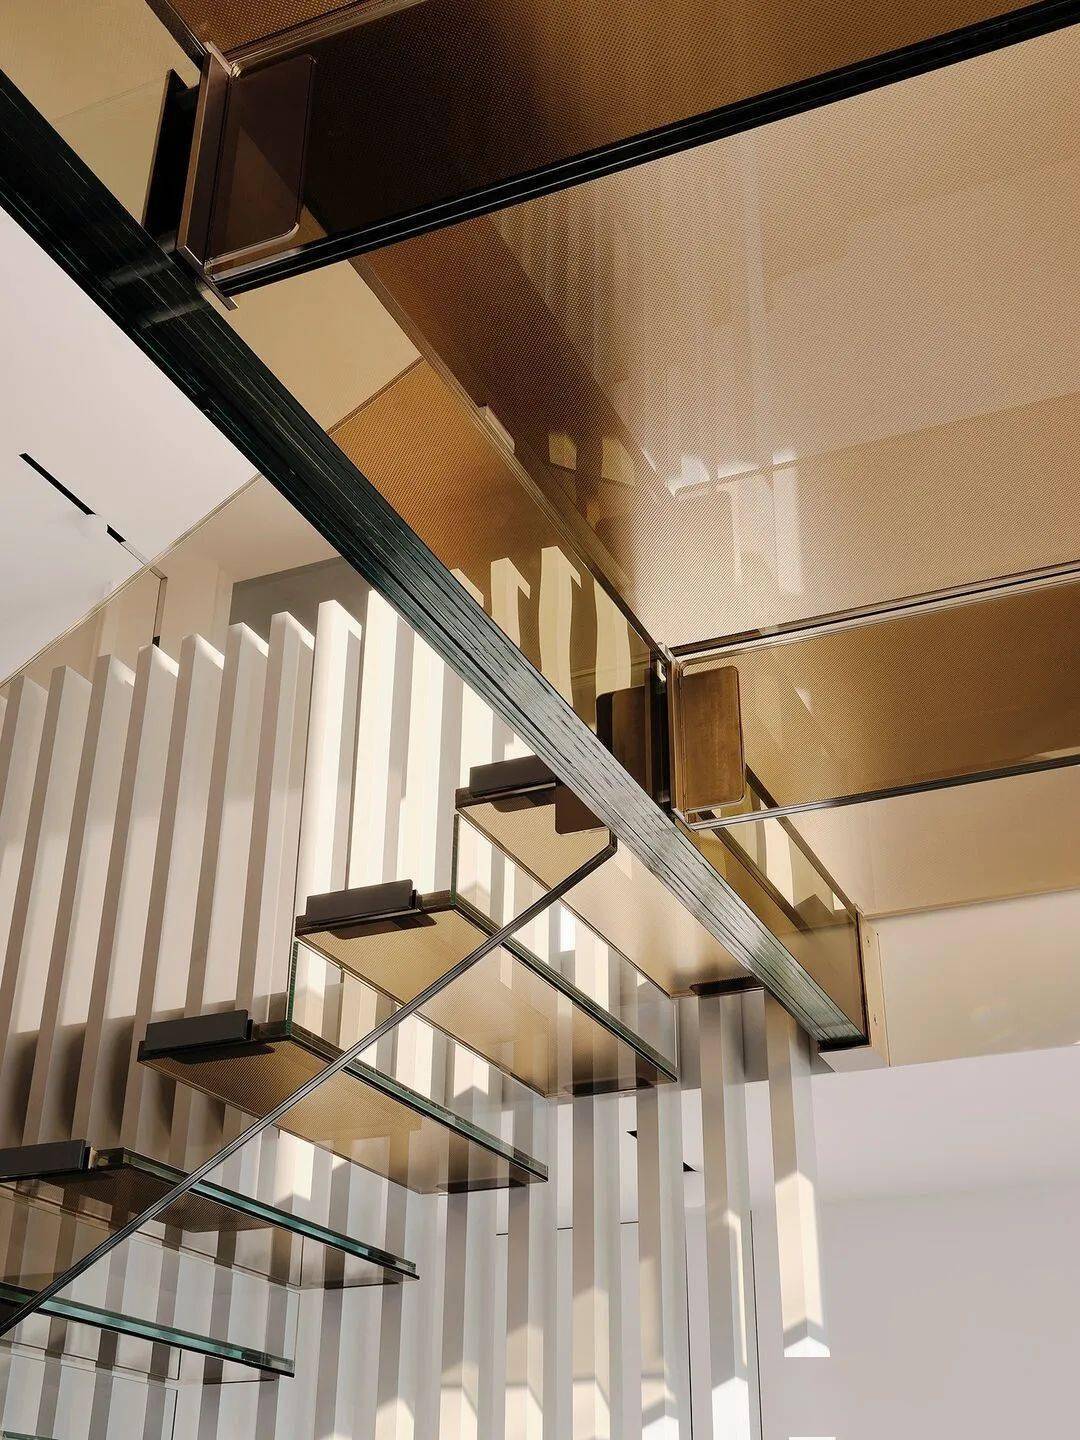 棕色玻璃的楼梯和二层连桥,不仅使得入口空间更加通透,而且也增加了